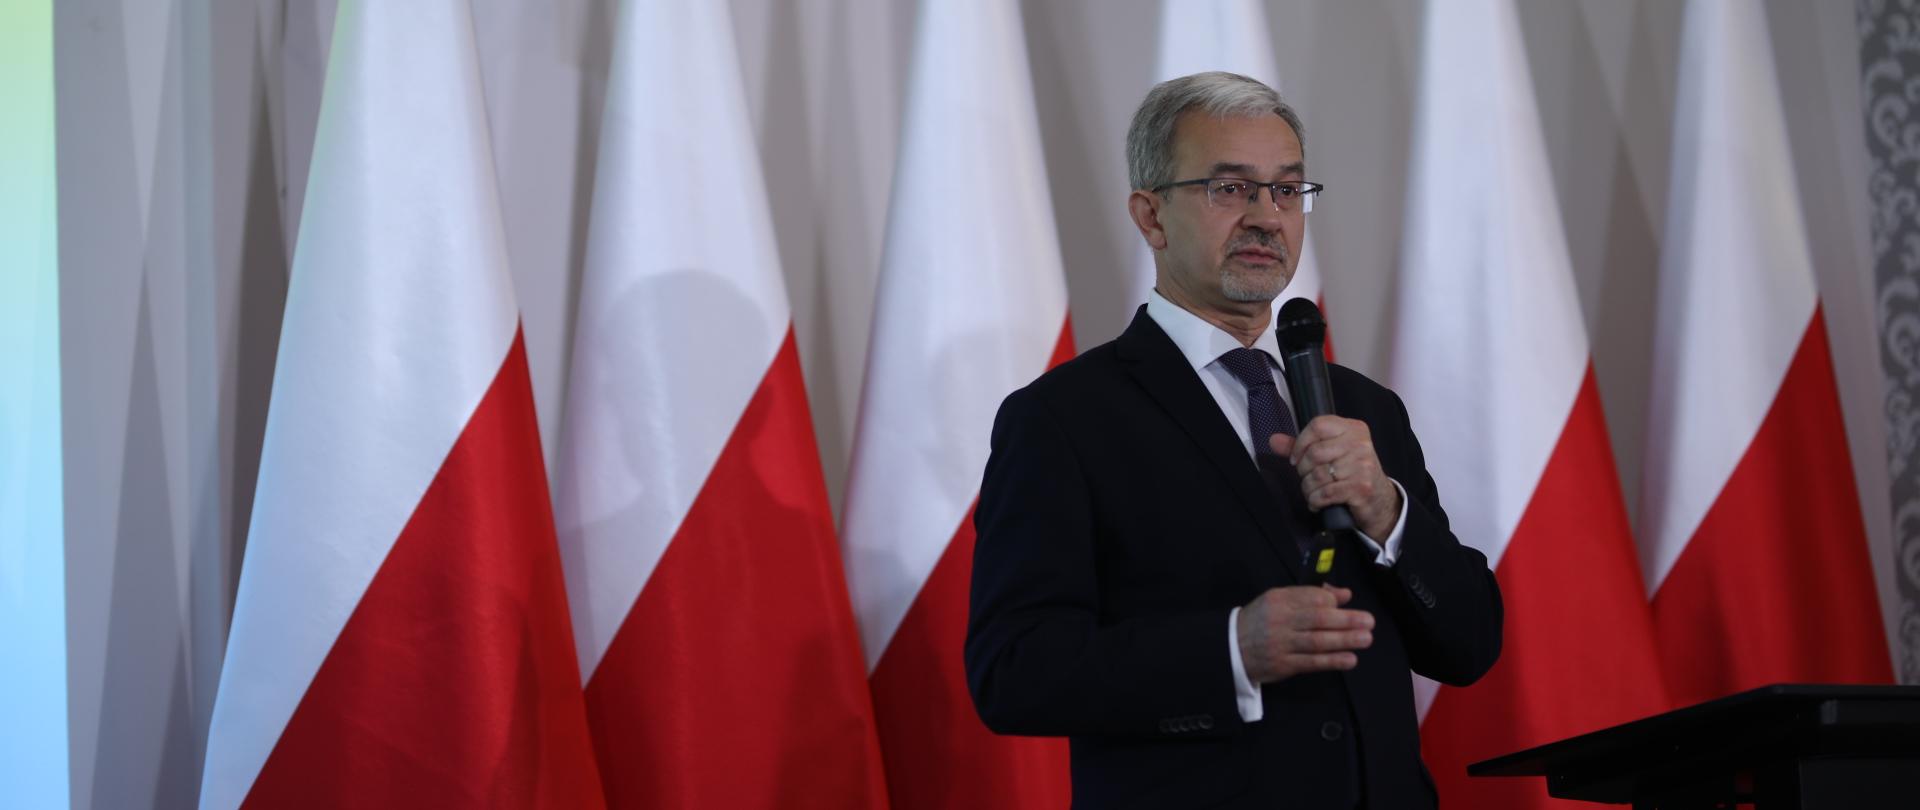 Na zdjęciu minister Jerzy Kwieciński z mikrofonem podczas przemówienia, w tle biało-czerwone flagi.